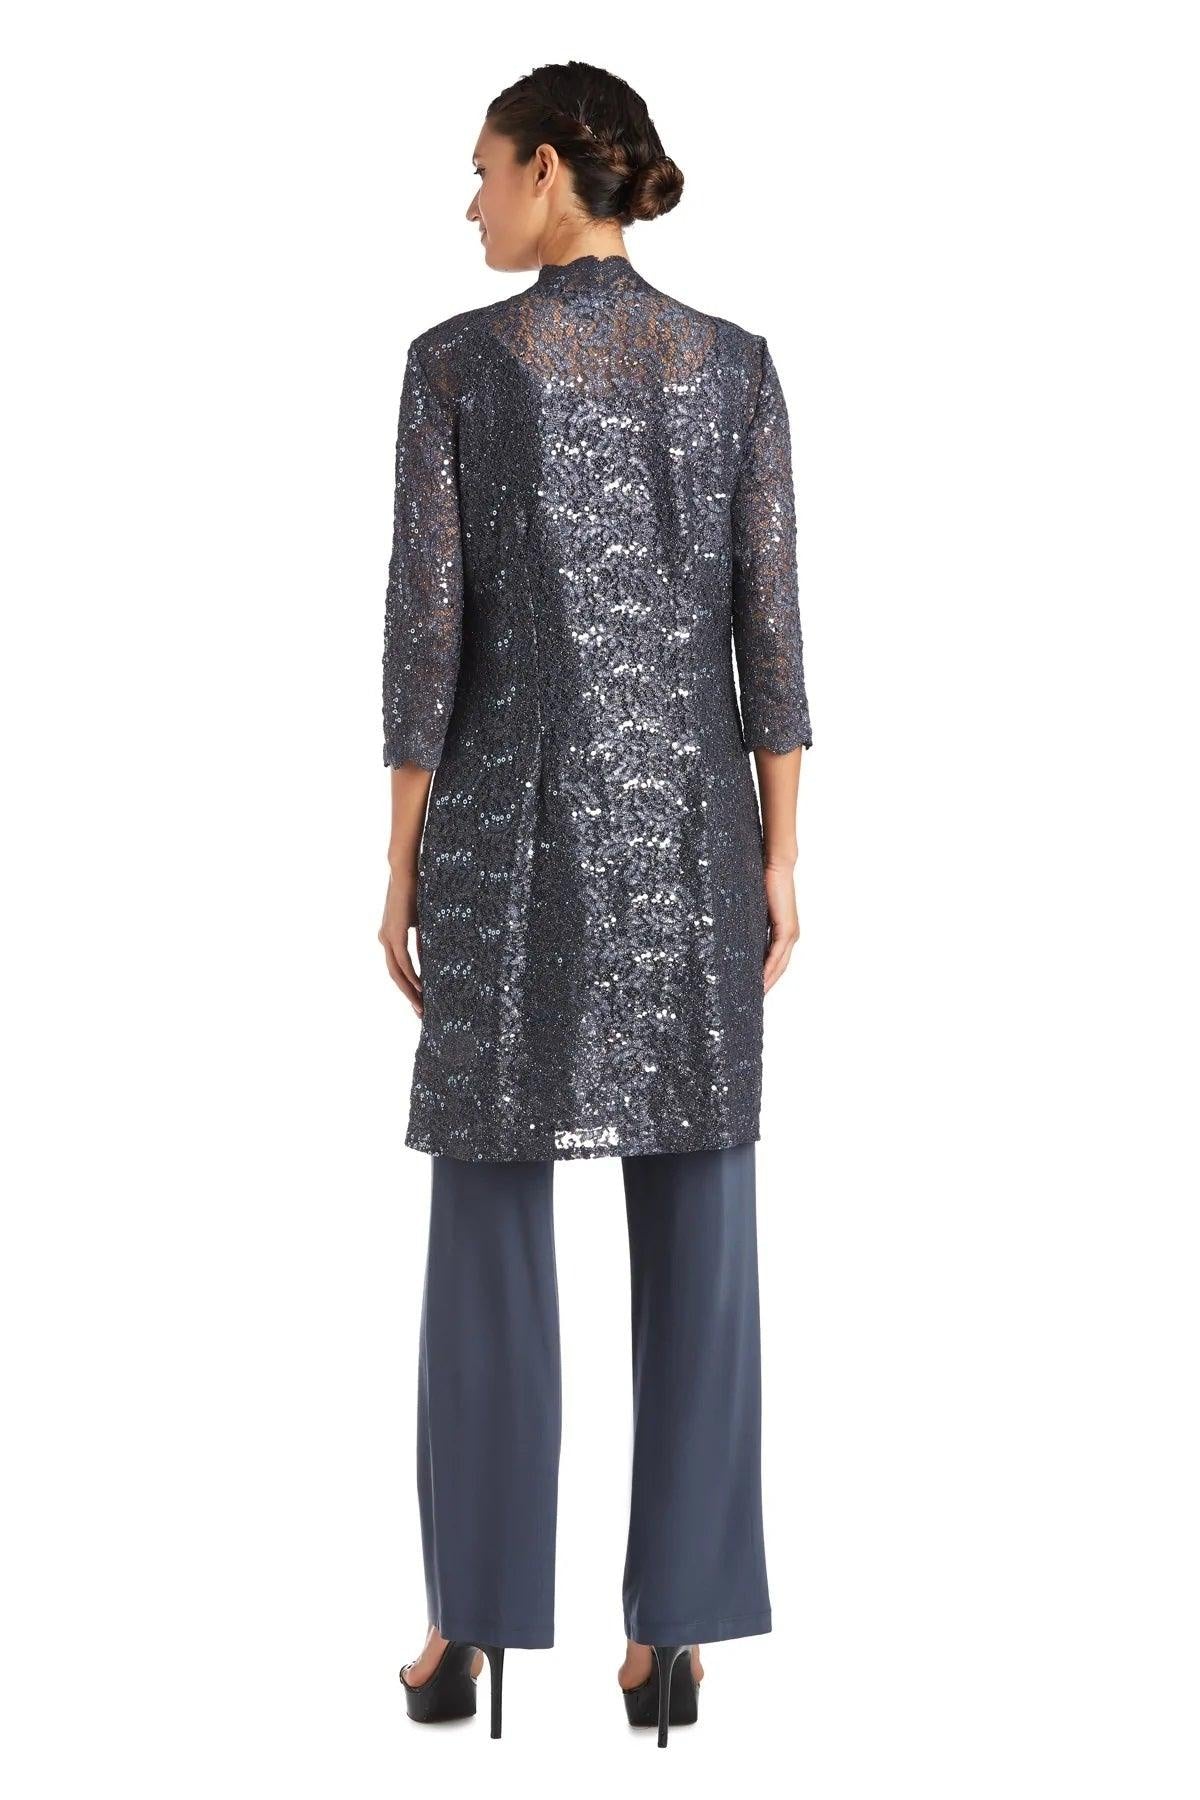 R&M Richards Metallic Lace Petite Pant Suit Sale - The Dress Outlet